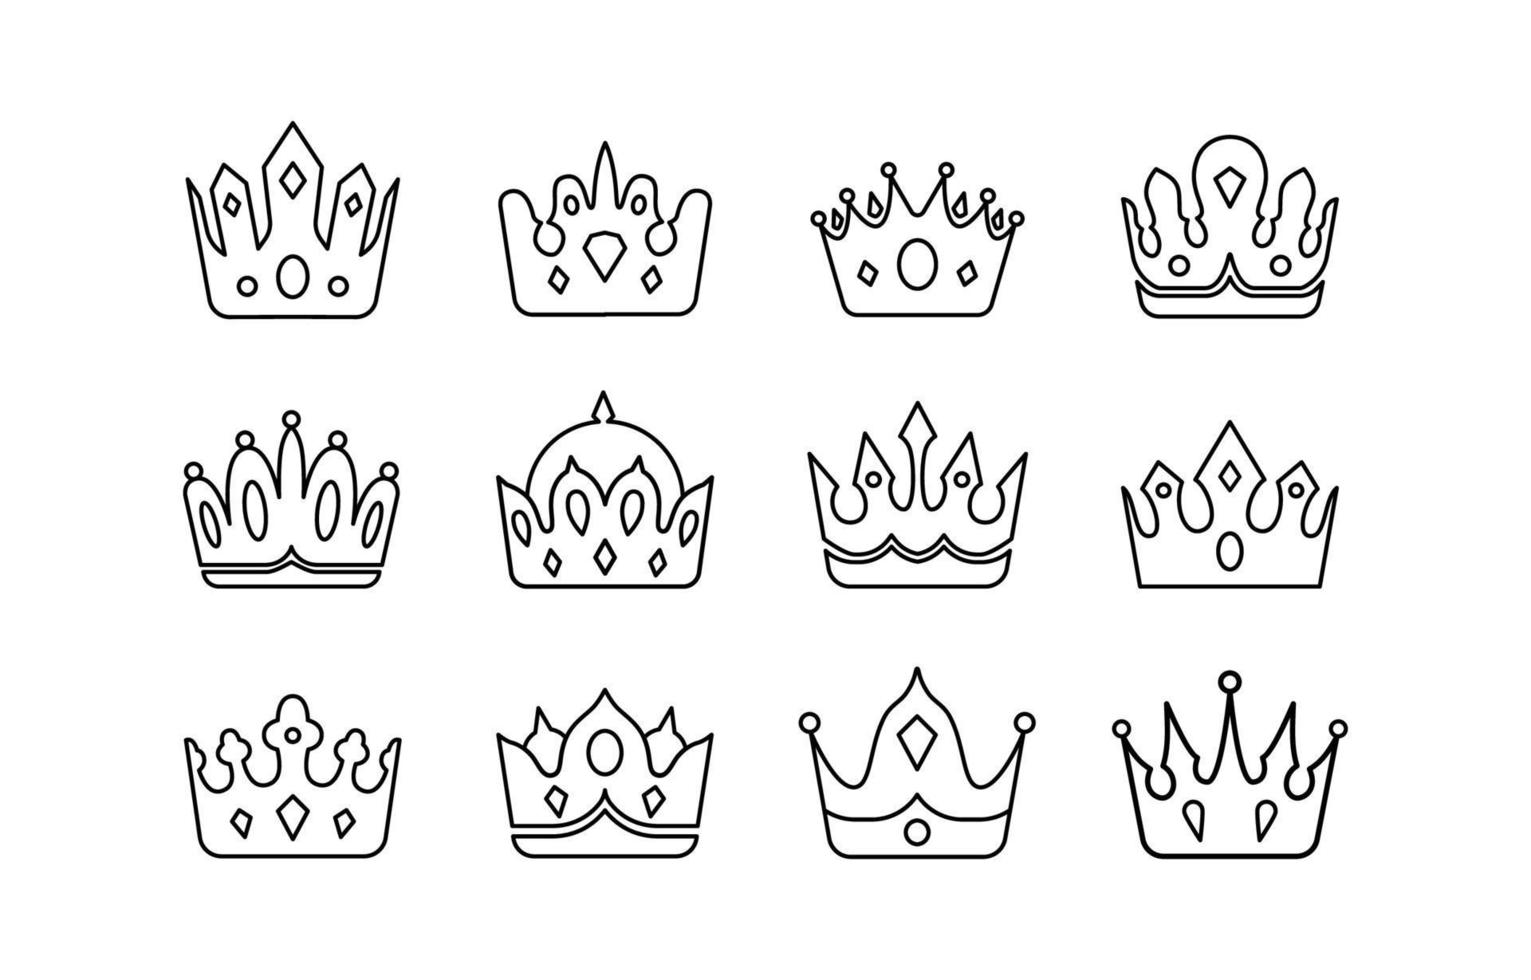 conjunto de ícones da coroa real vetor